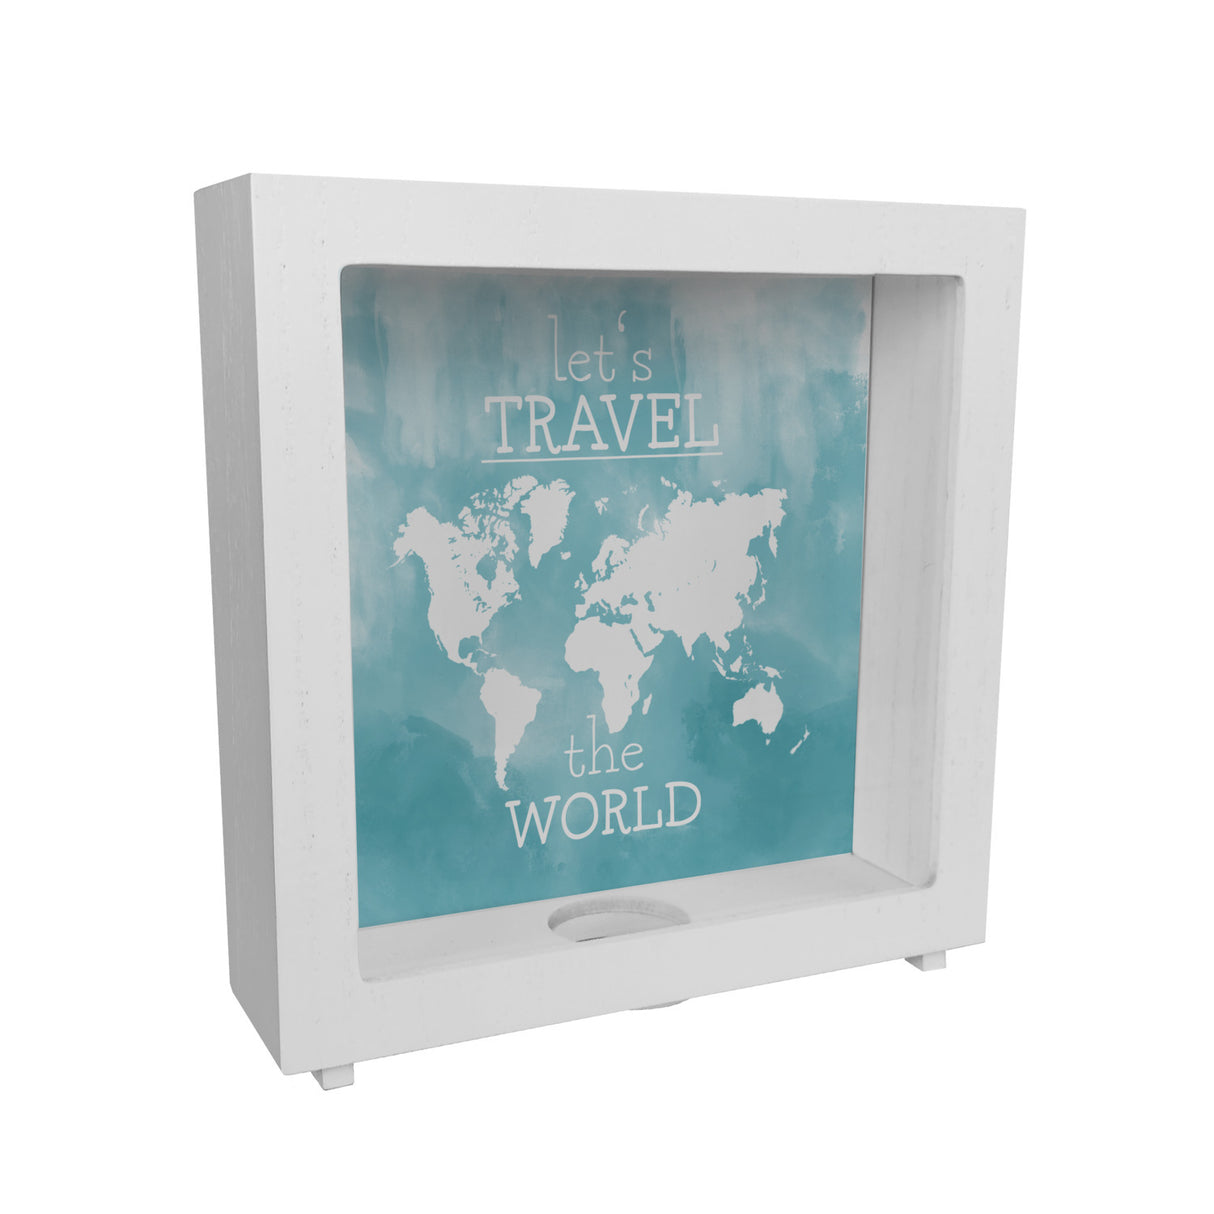 Spardose mit Weltkarten Motiv und Text - let's travel the world